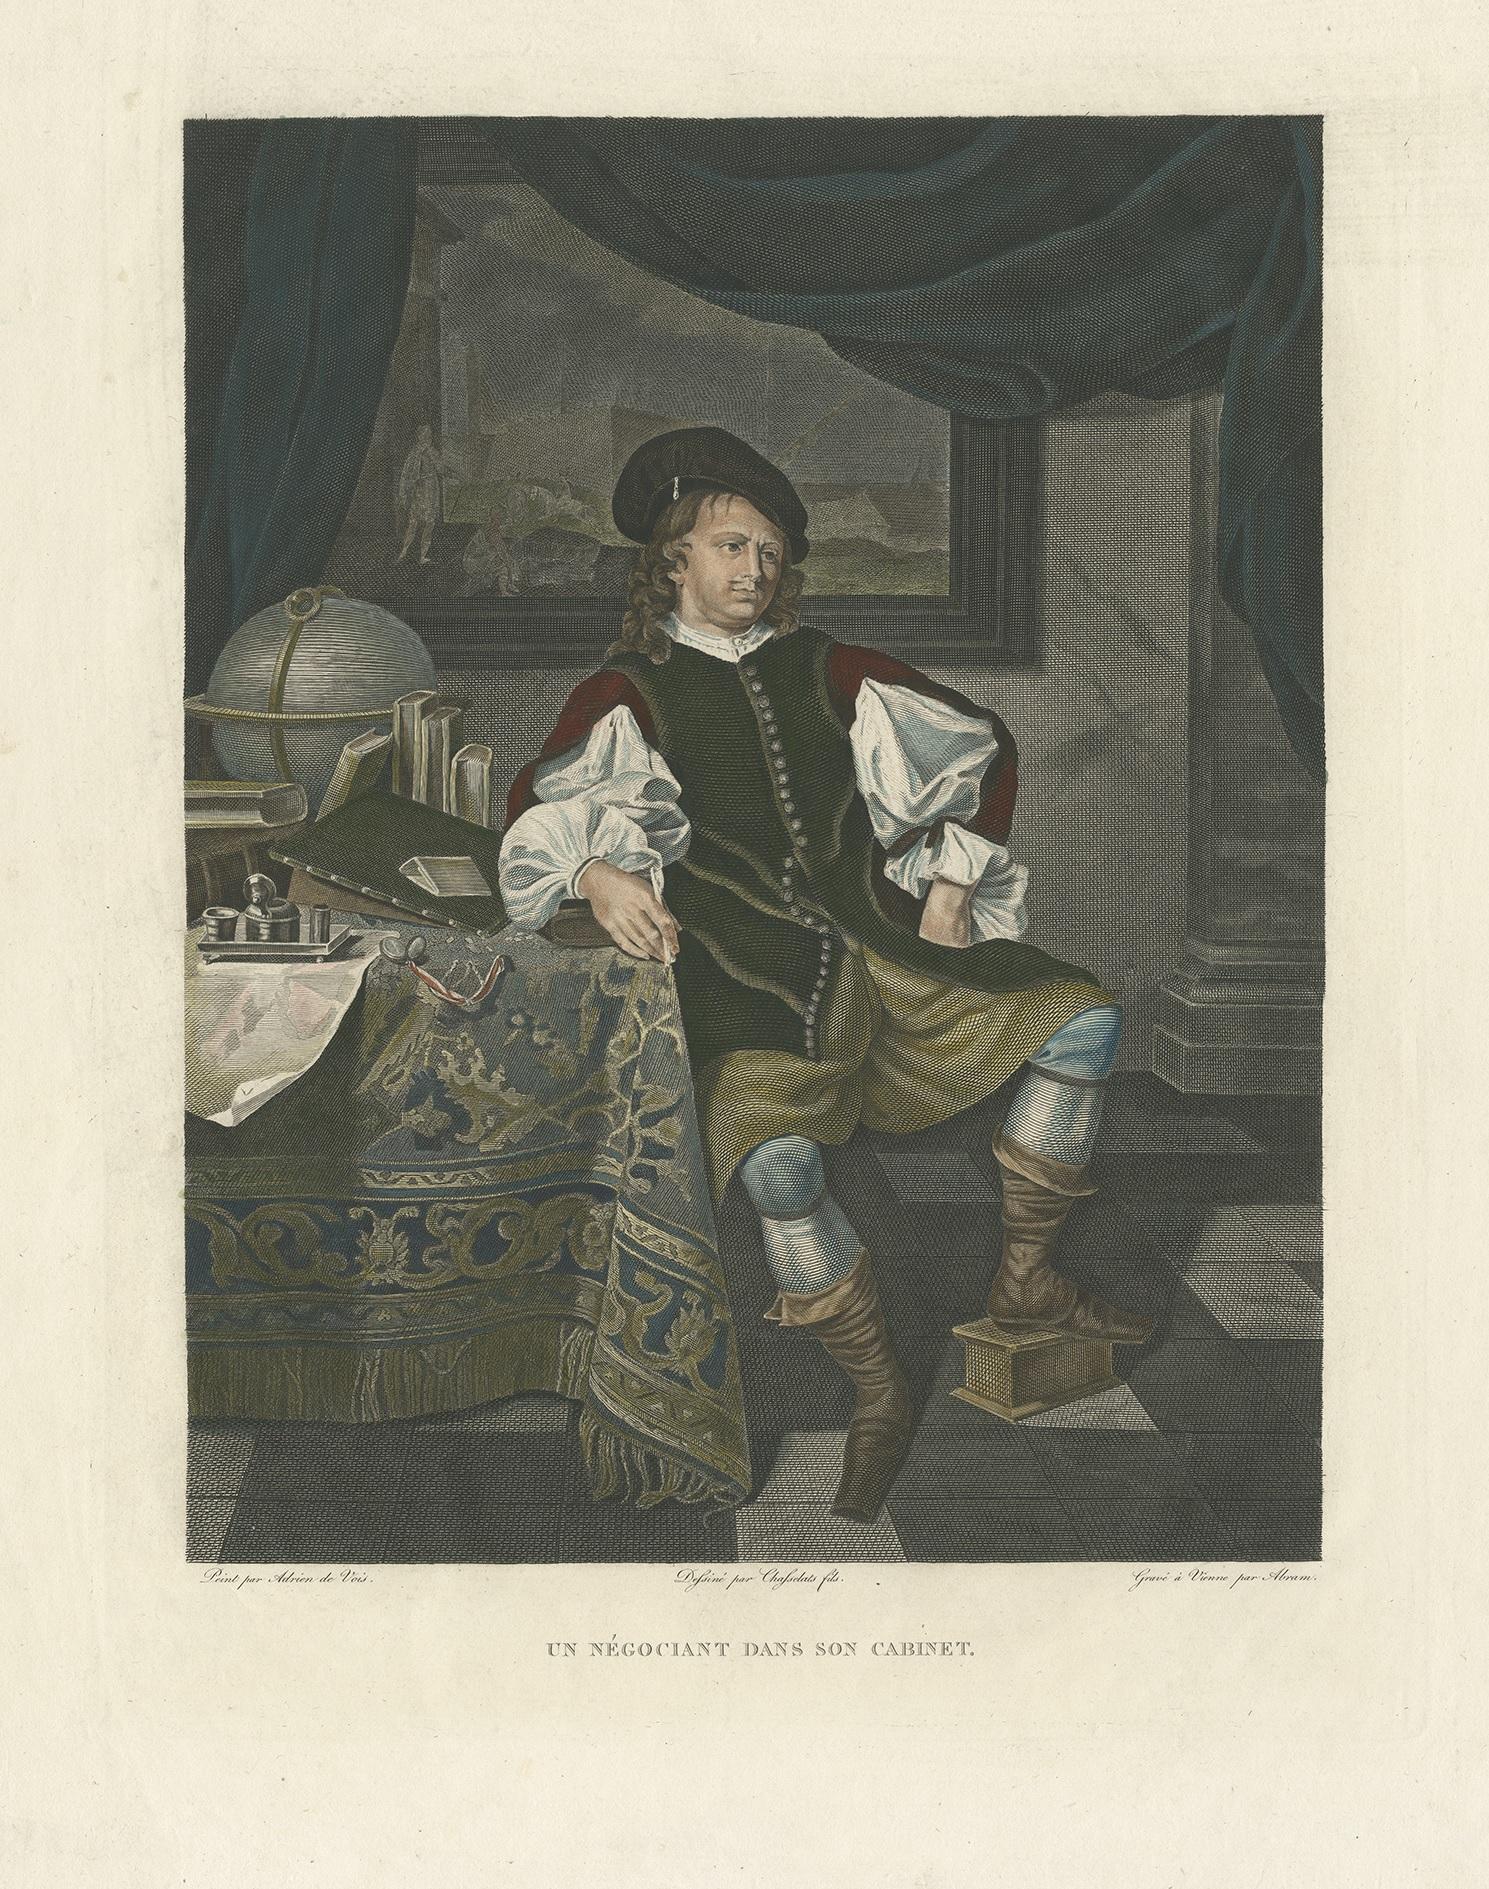 Antique print titled 'Un négociant dans son Cabinet'. Large print of a Dutch merchant. Made by Abram after Adrien de Vois.